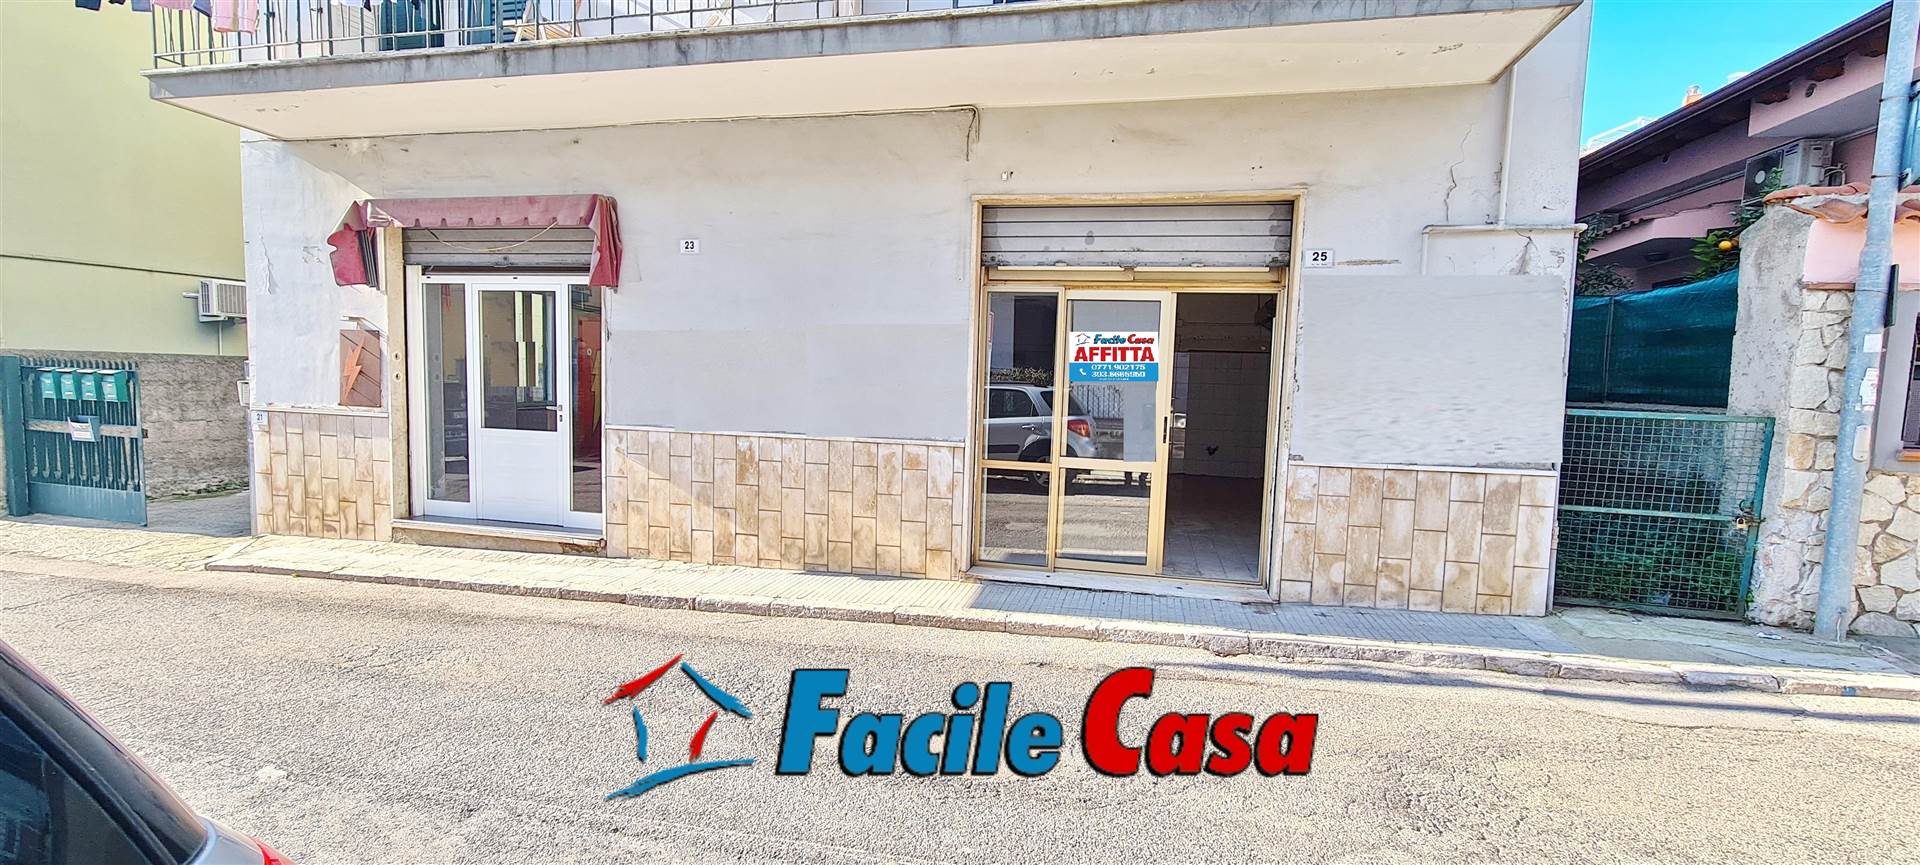 Negozio / Locale in affitto a Formia, 1 locali, prezzo € 450 | PortaleAgenzieImmobiliari.it